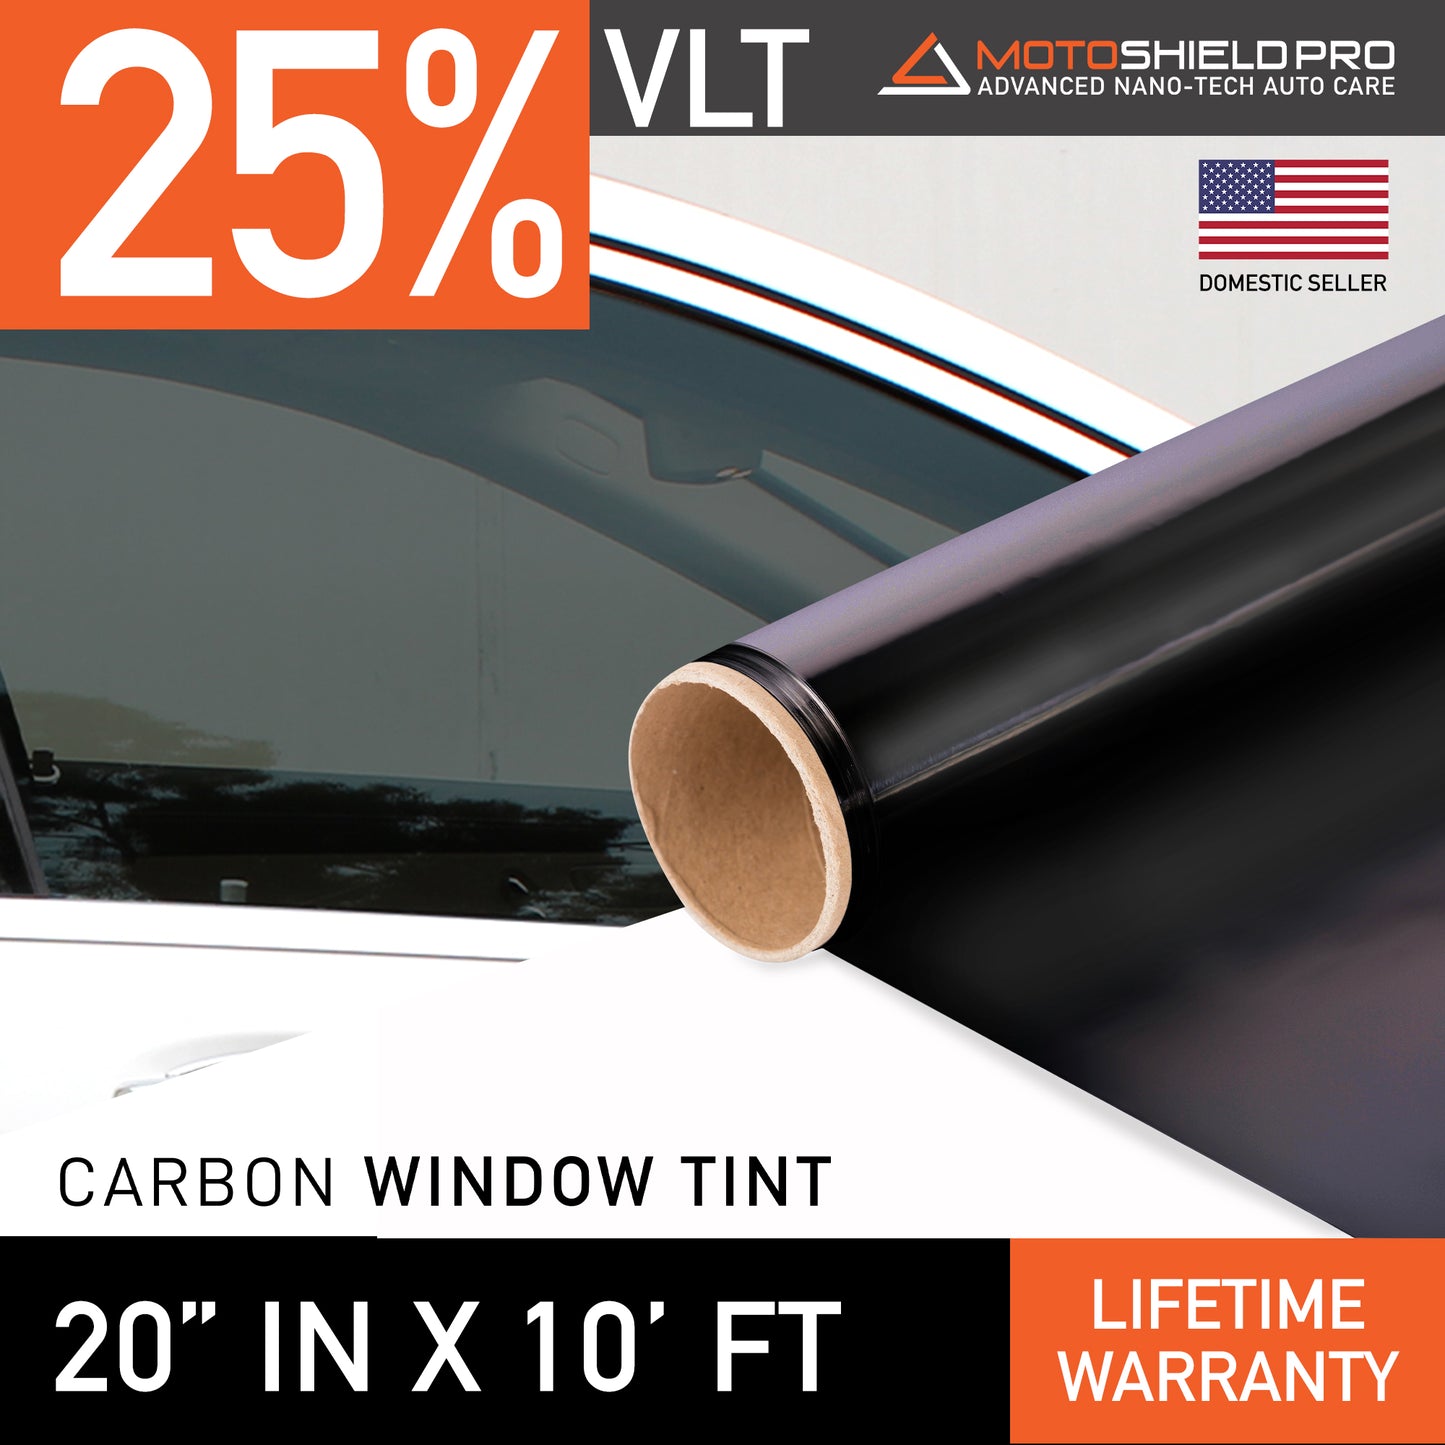 MotoShield Pro Carbon Window Tint - 20" in x 10' ft Roll + Lifetime Warranty